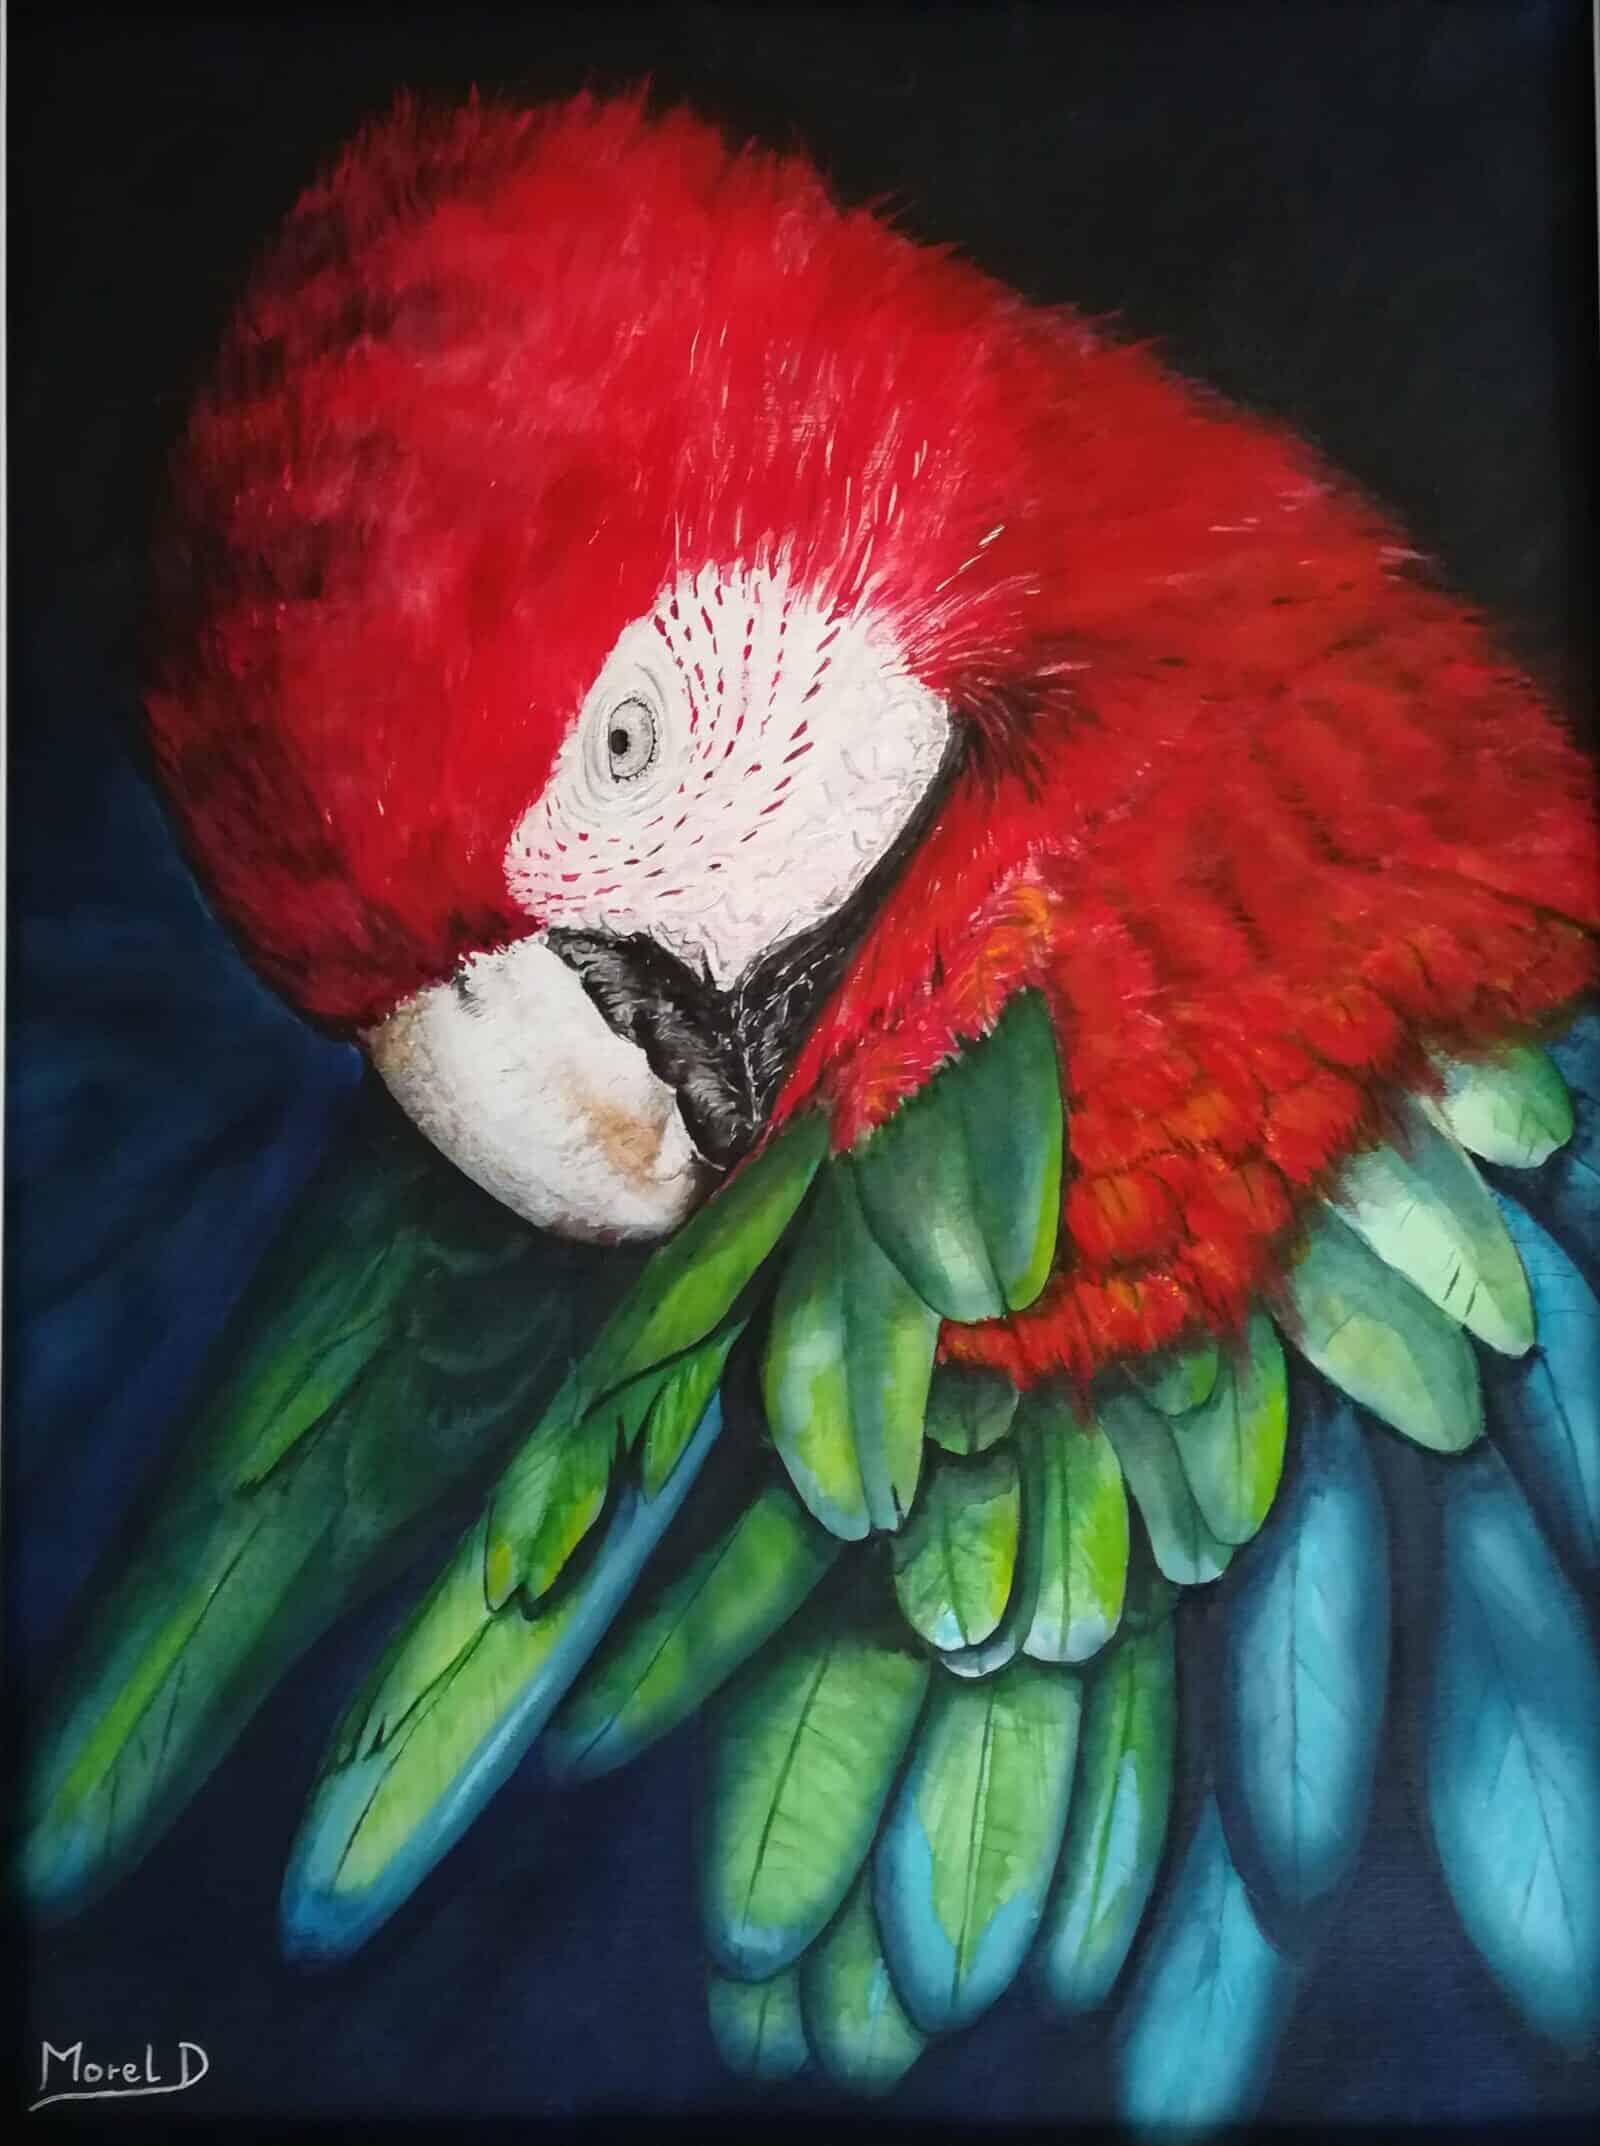 œuvre d'art, animalier, acrylique sur papier A3, david morel artiste, portrait d'un ara rouge qui nettoie ses plumes